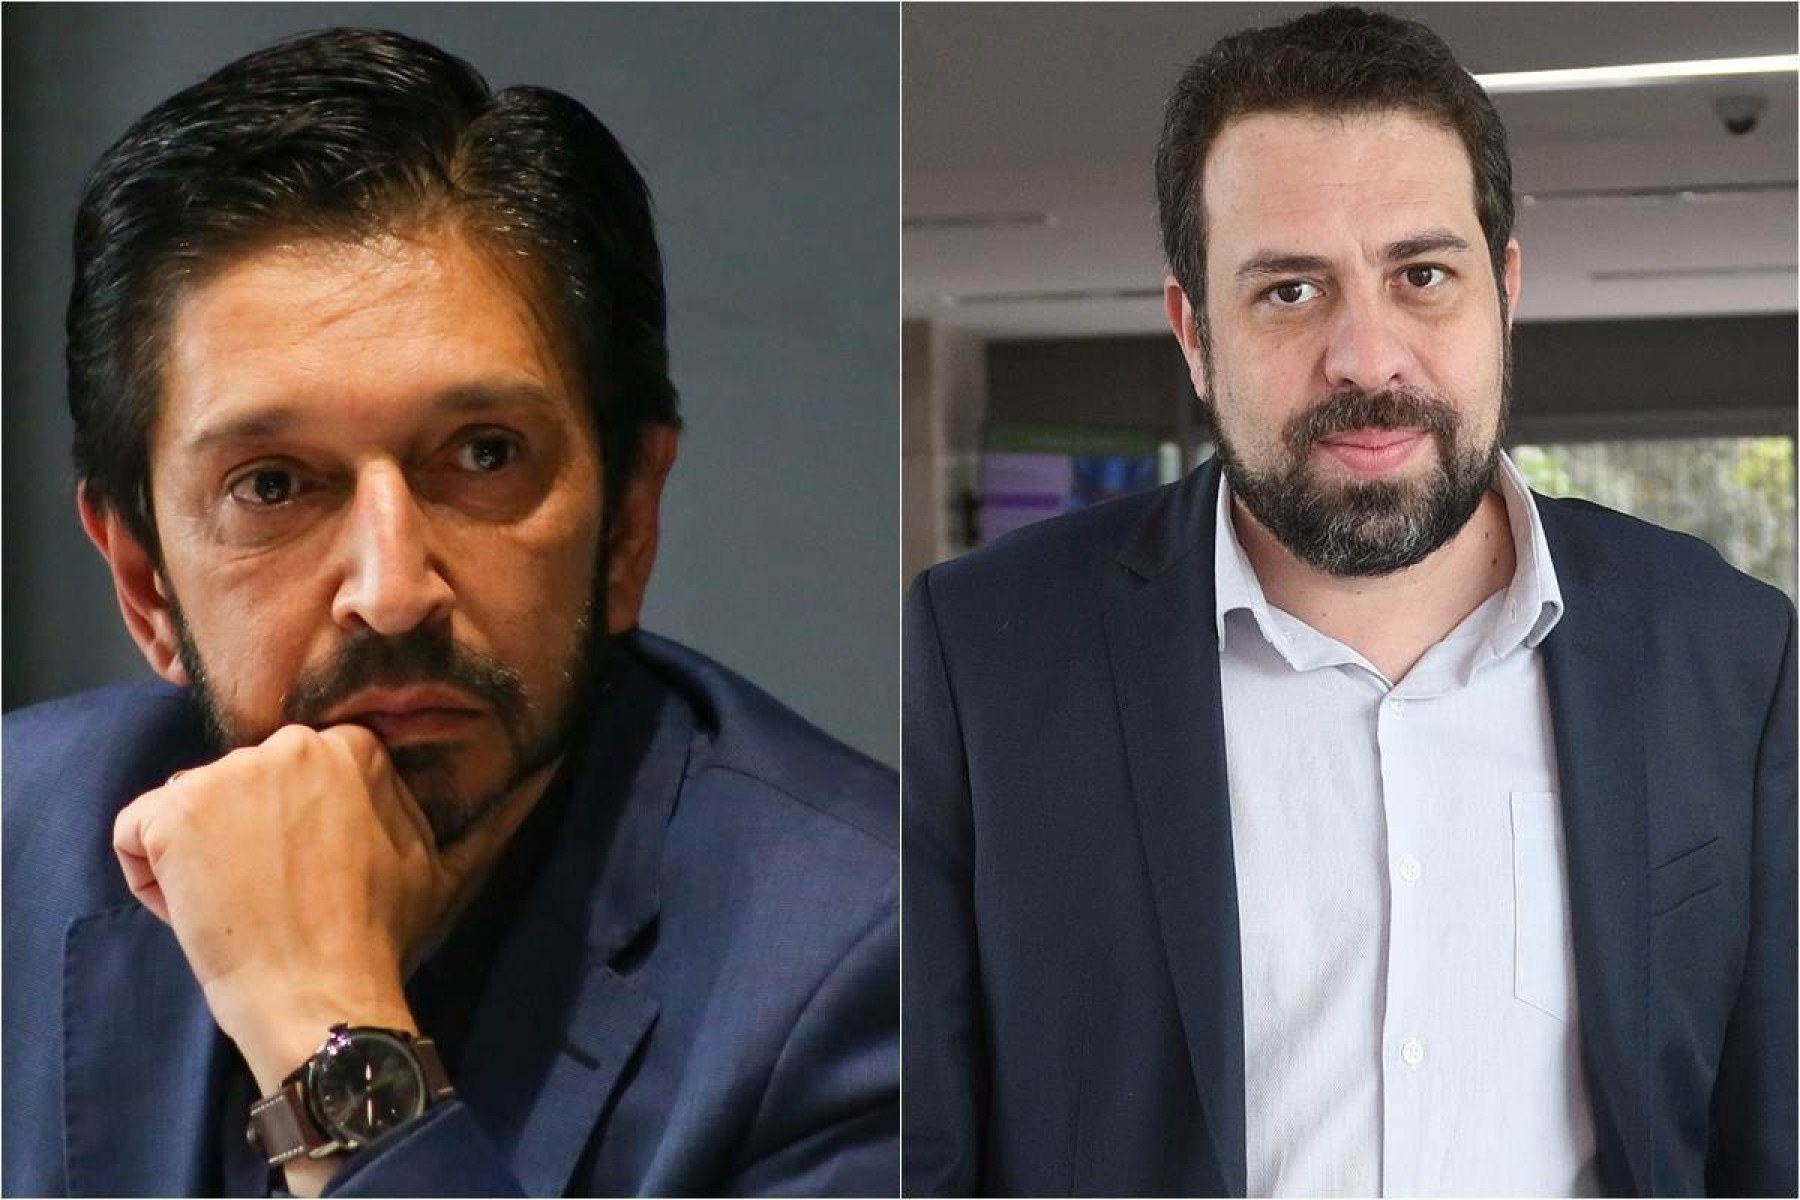 Ricardo Nunes e Guilherme Boulos lideram disputa em SP, segundo Datafolha